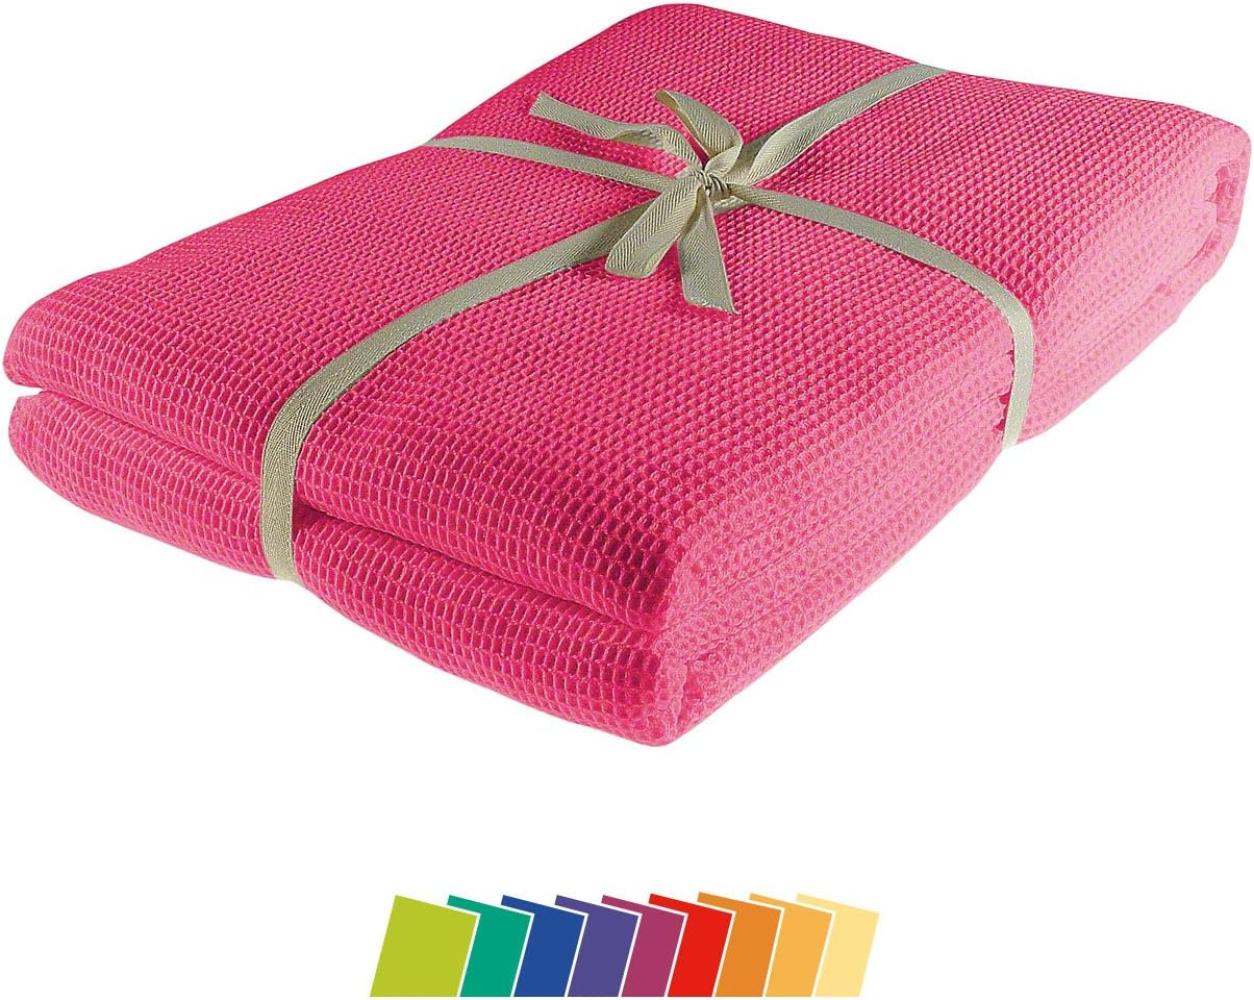 Kneer la Diva Pique Decke Qualität 91 Farbe pink Größe 150x210 cm Kuscheldecke Bild 1